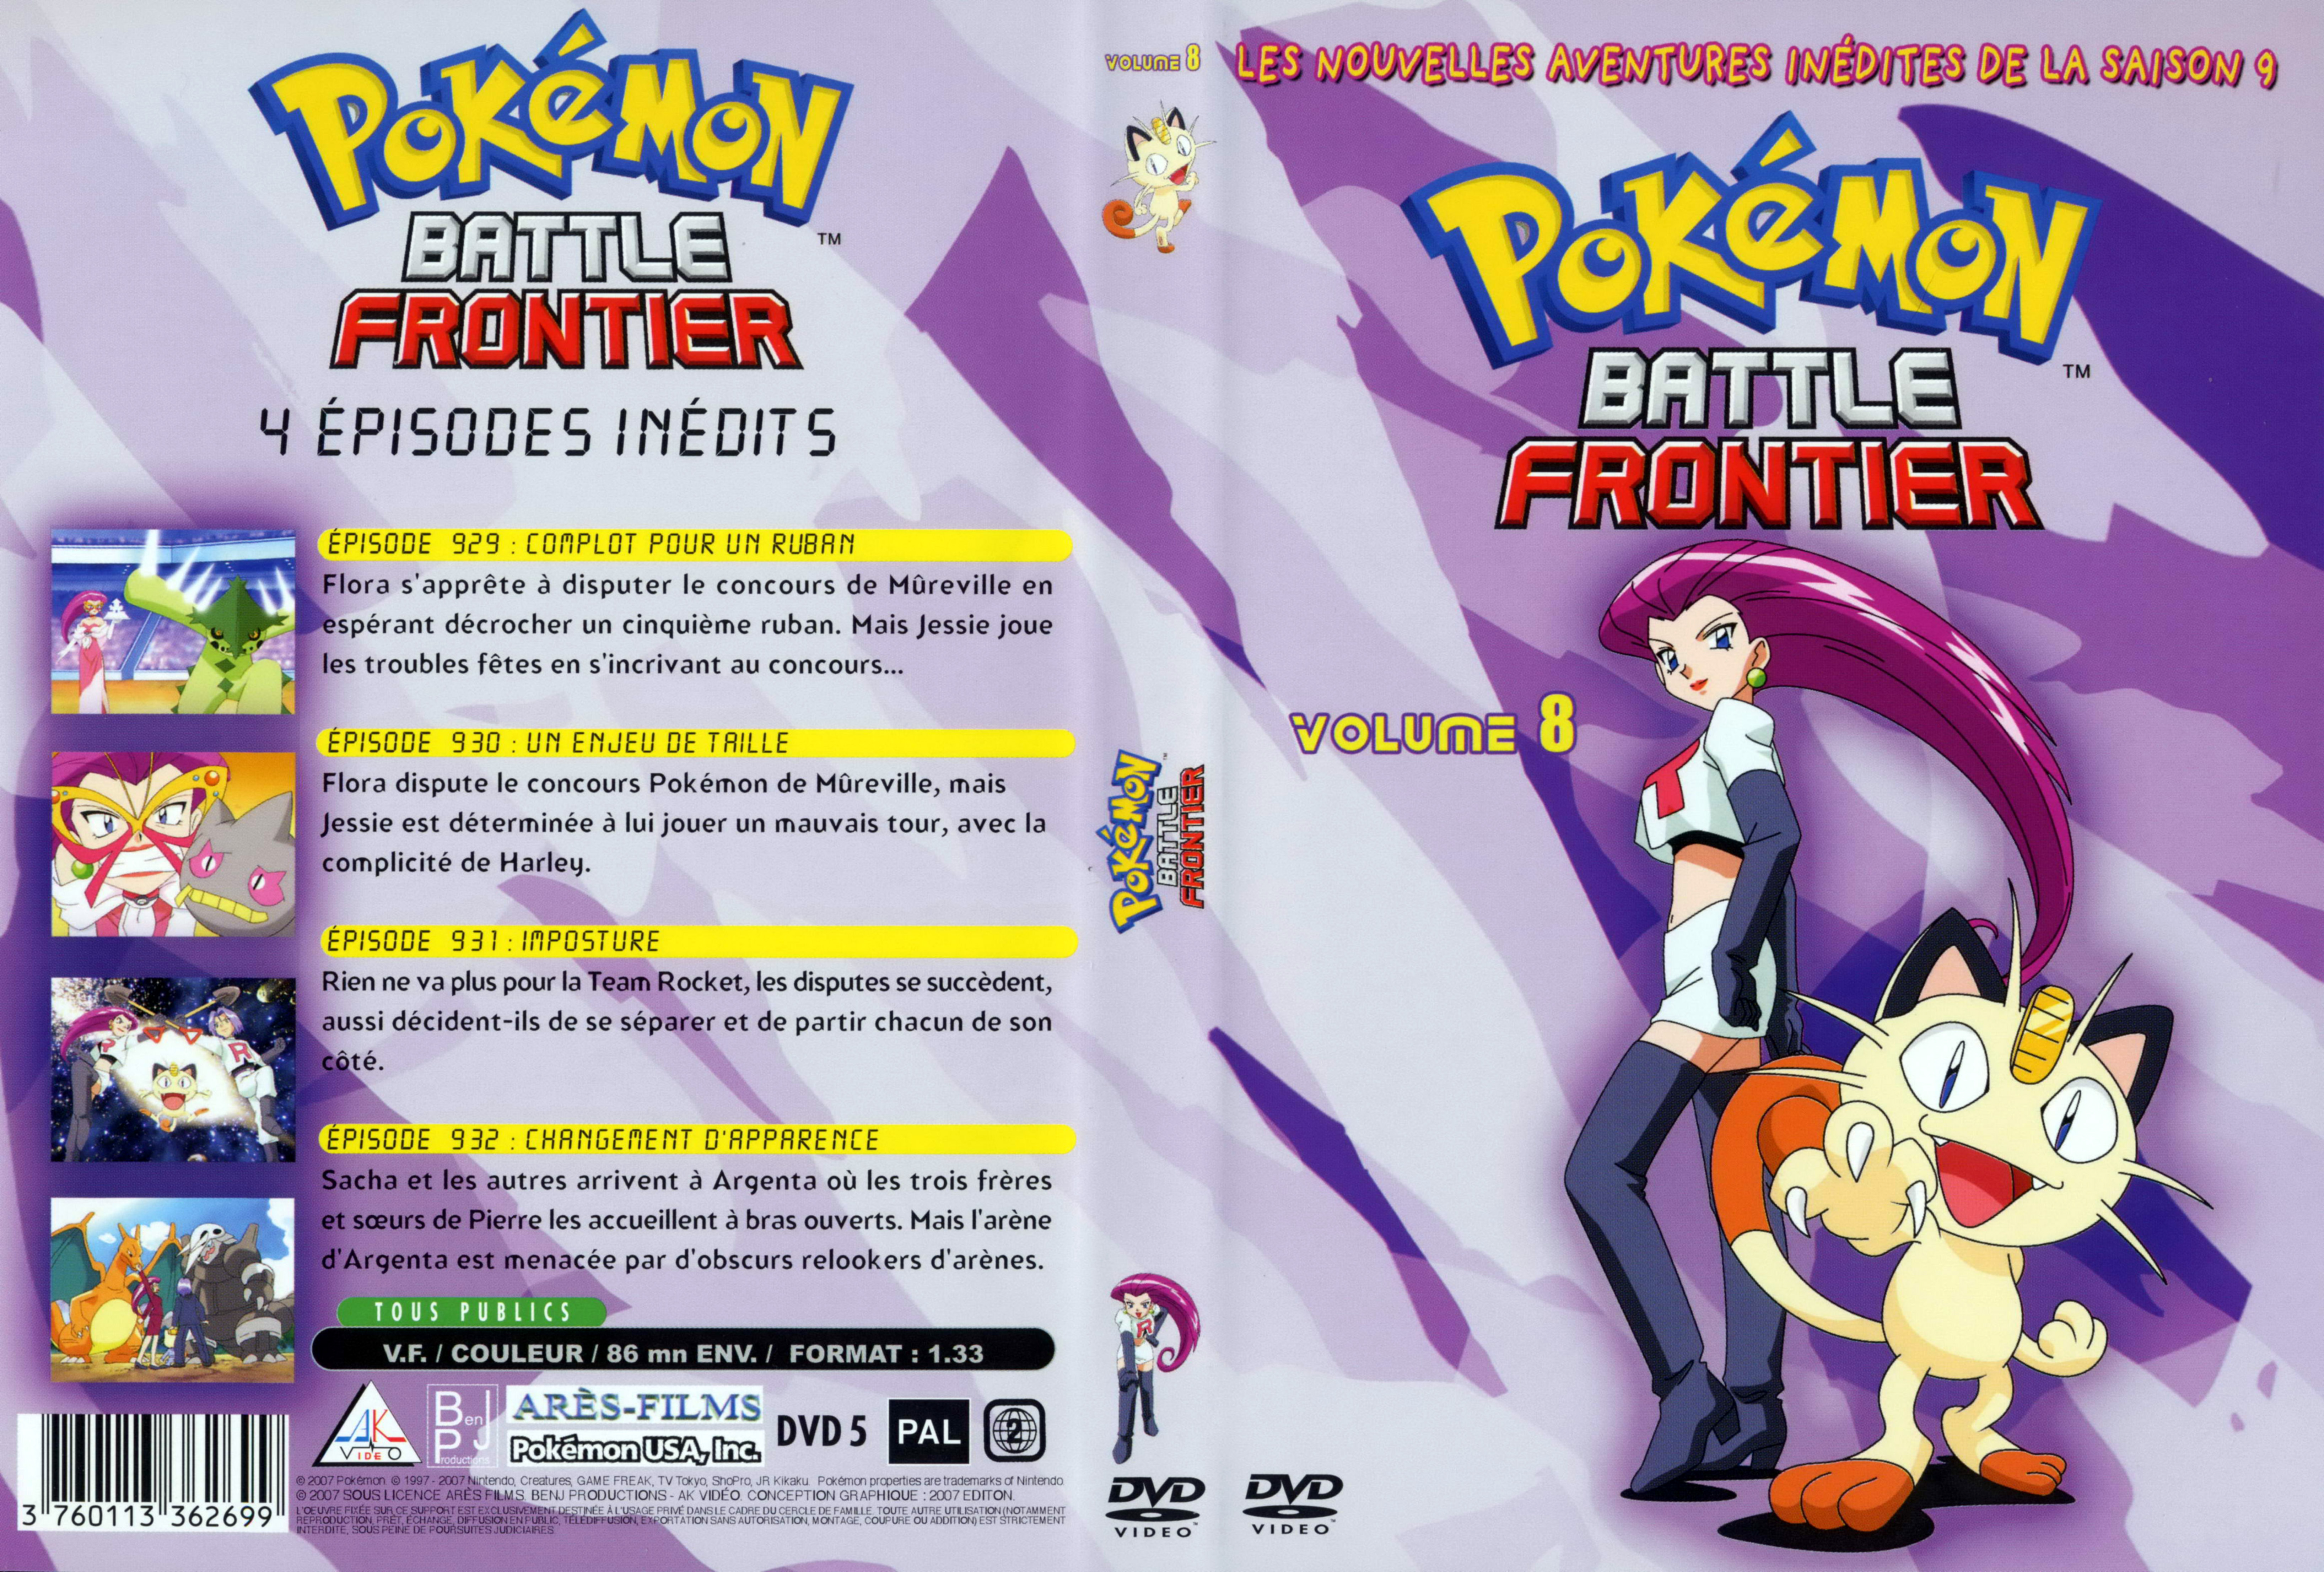 Jaquette DVD Pokemon battle frontier Saison 09 DVD 8